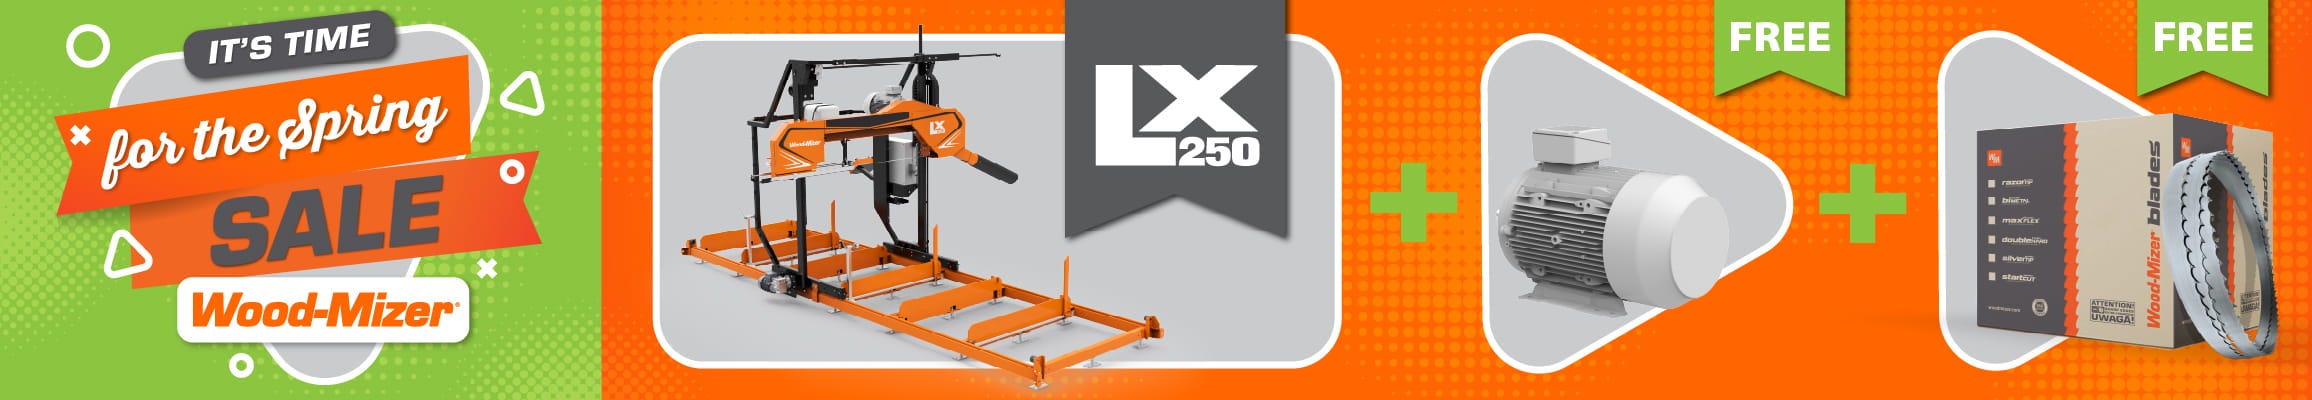 LX250 Sawmill Sale